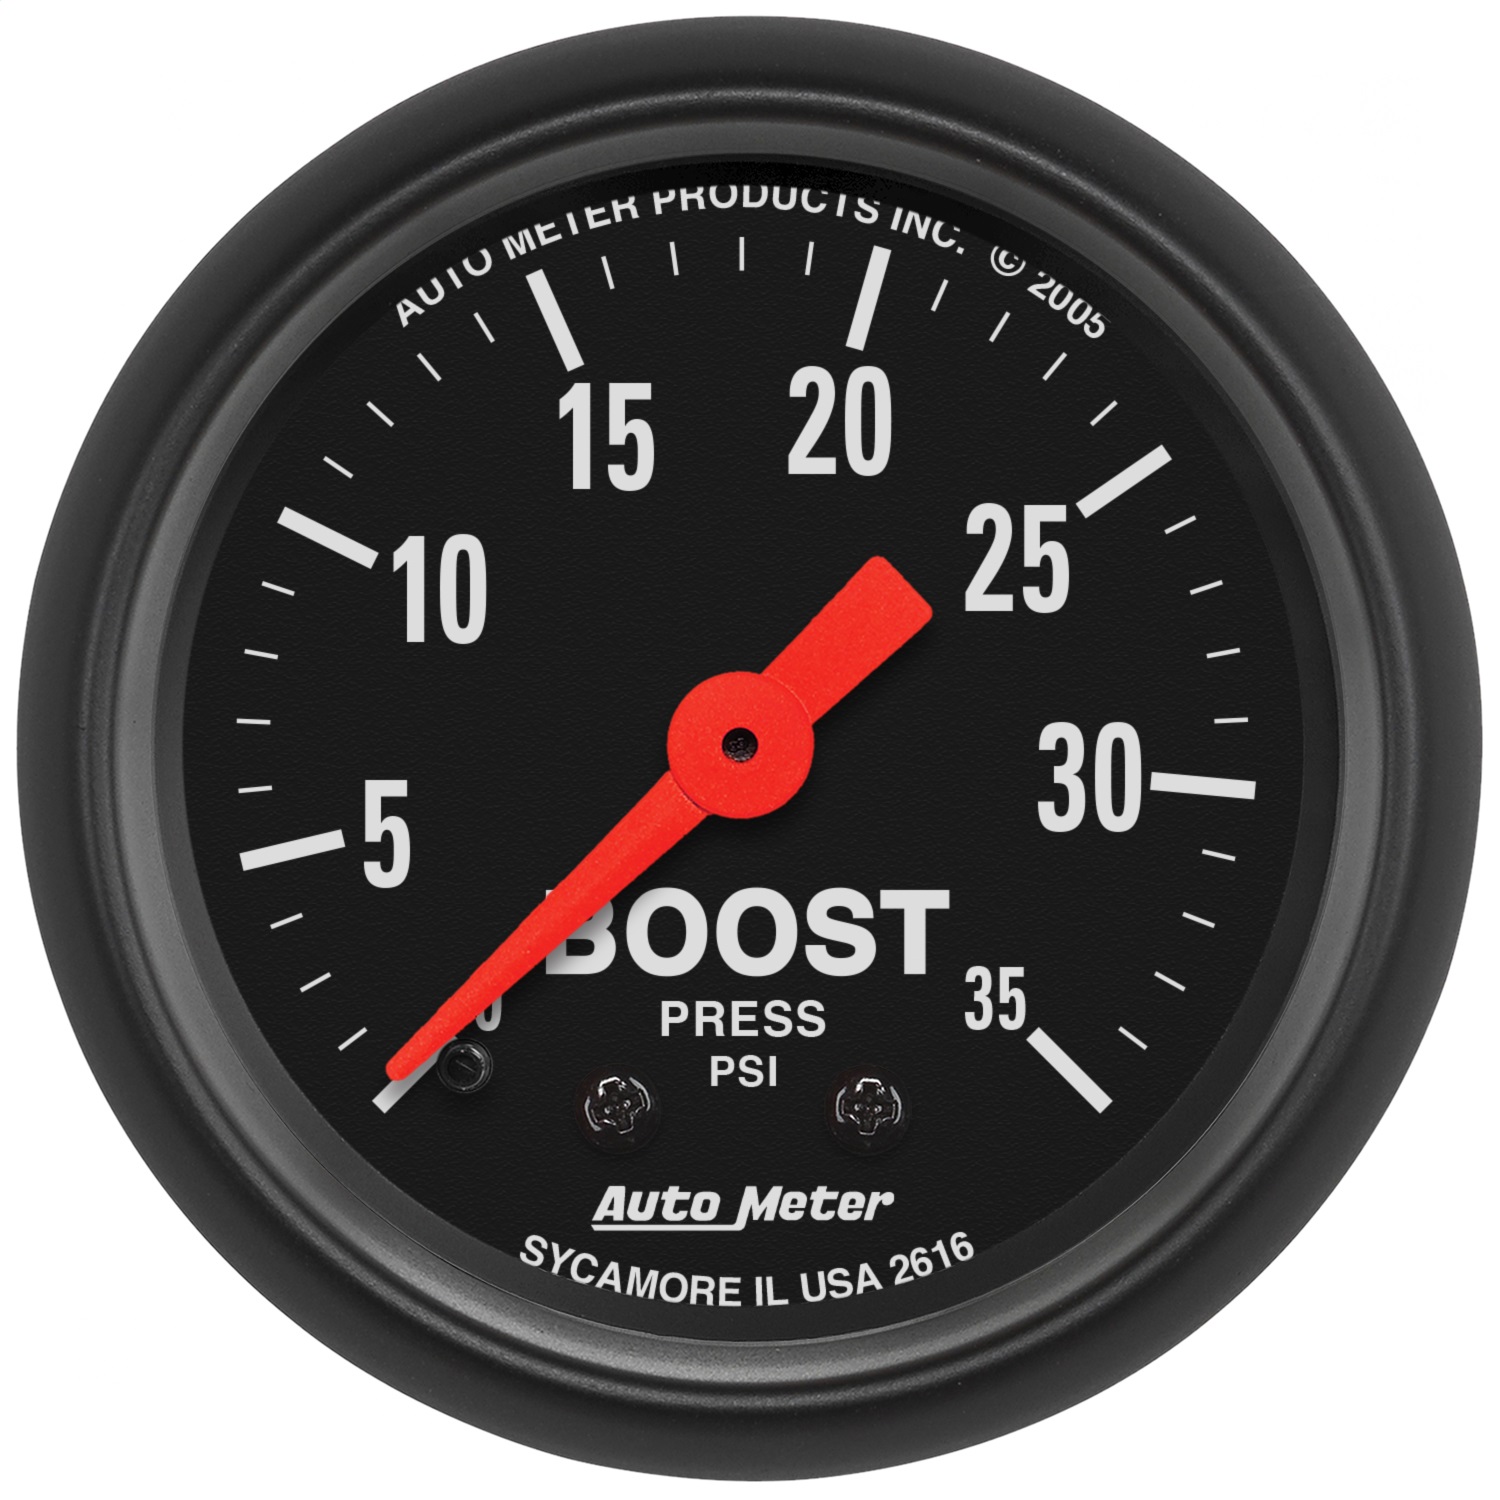 Auto Meter Auto Meter 2616 Z-Series; Mechanical Boost Gauge